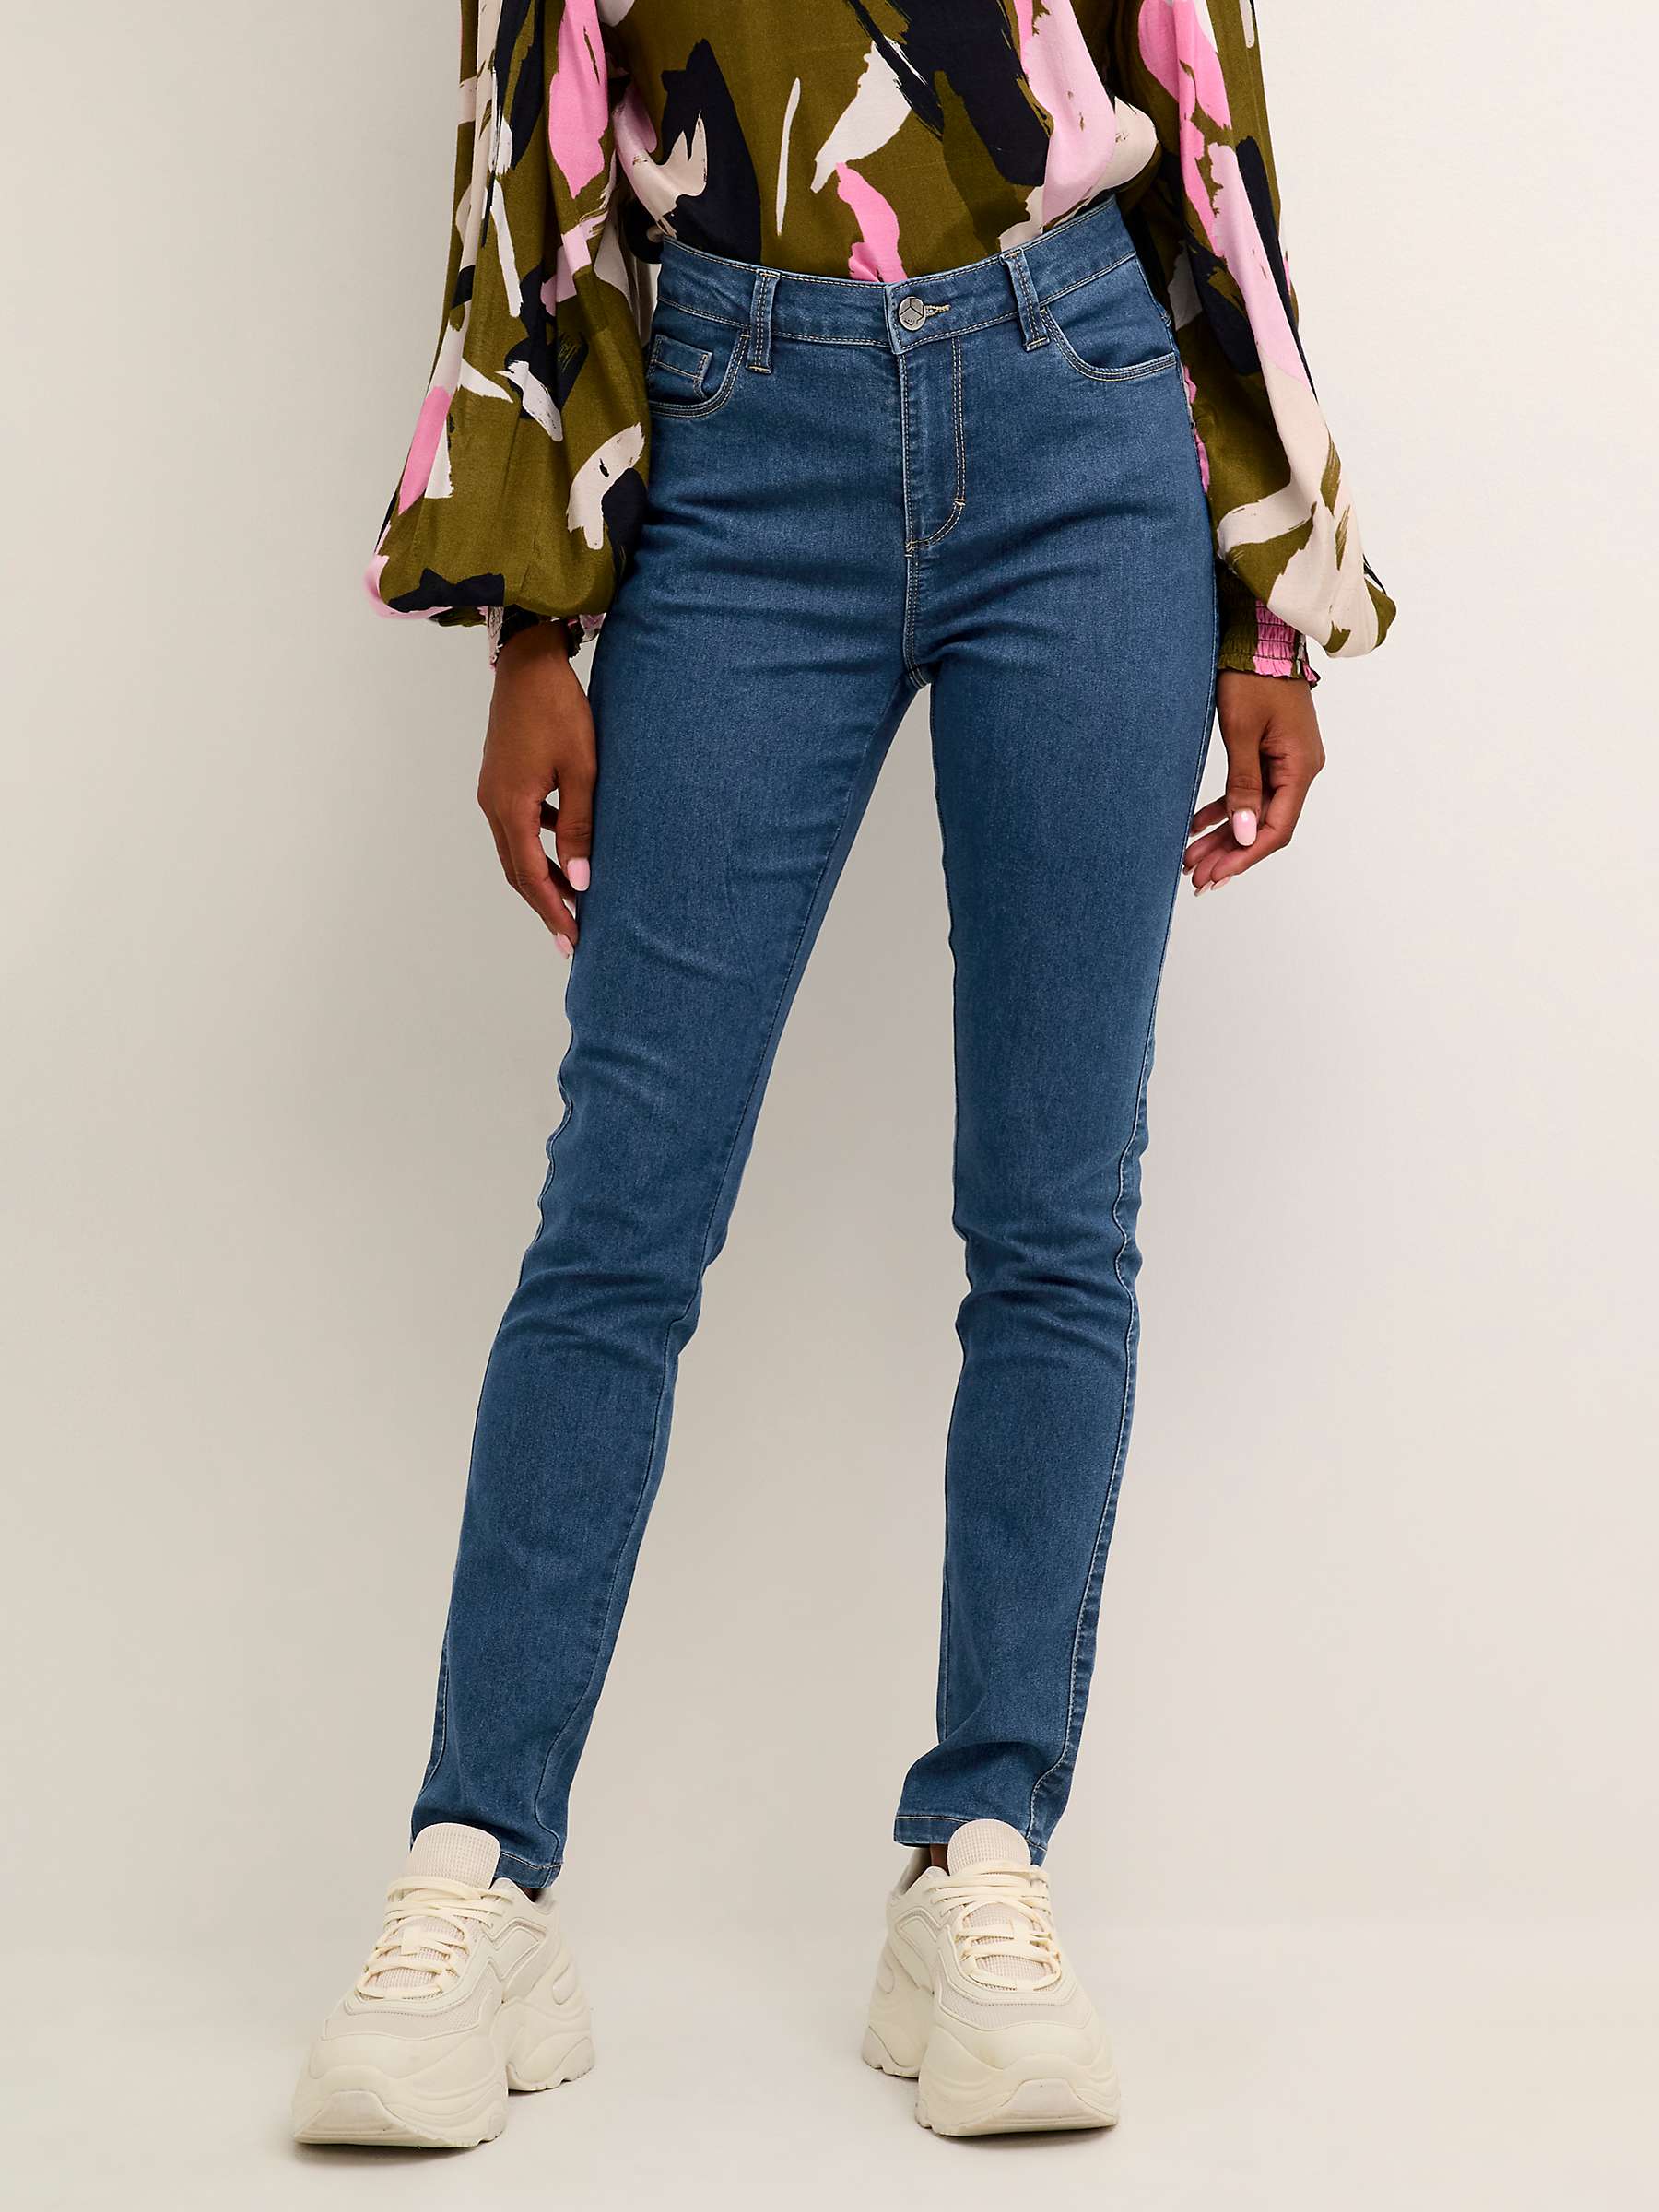 Buy KAFFE Vicky Slim Fit Jeans, Blue Online at johnlewis.com